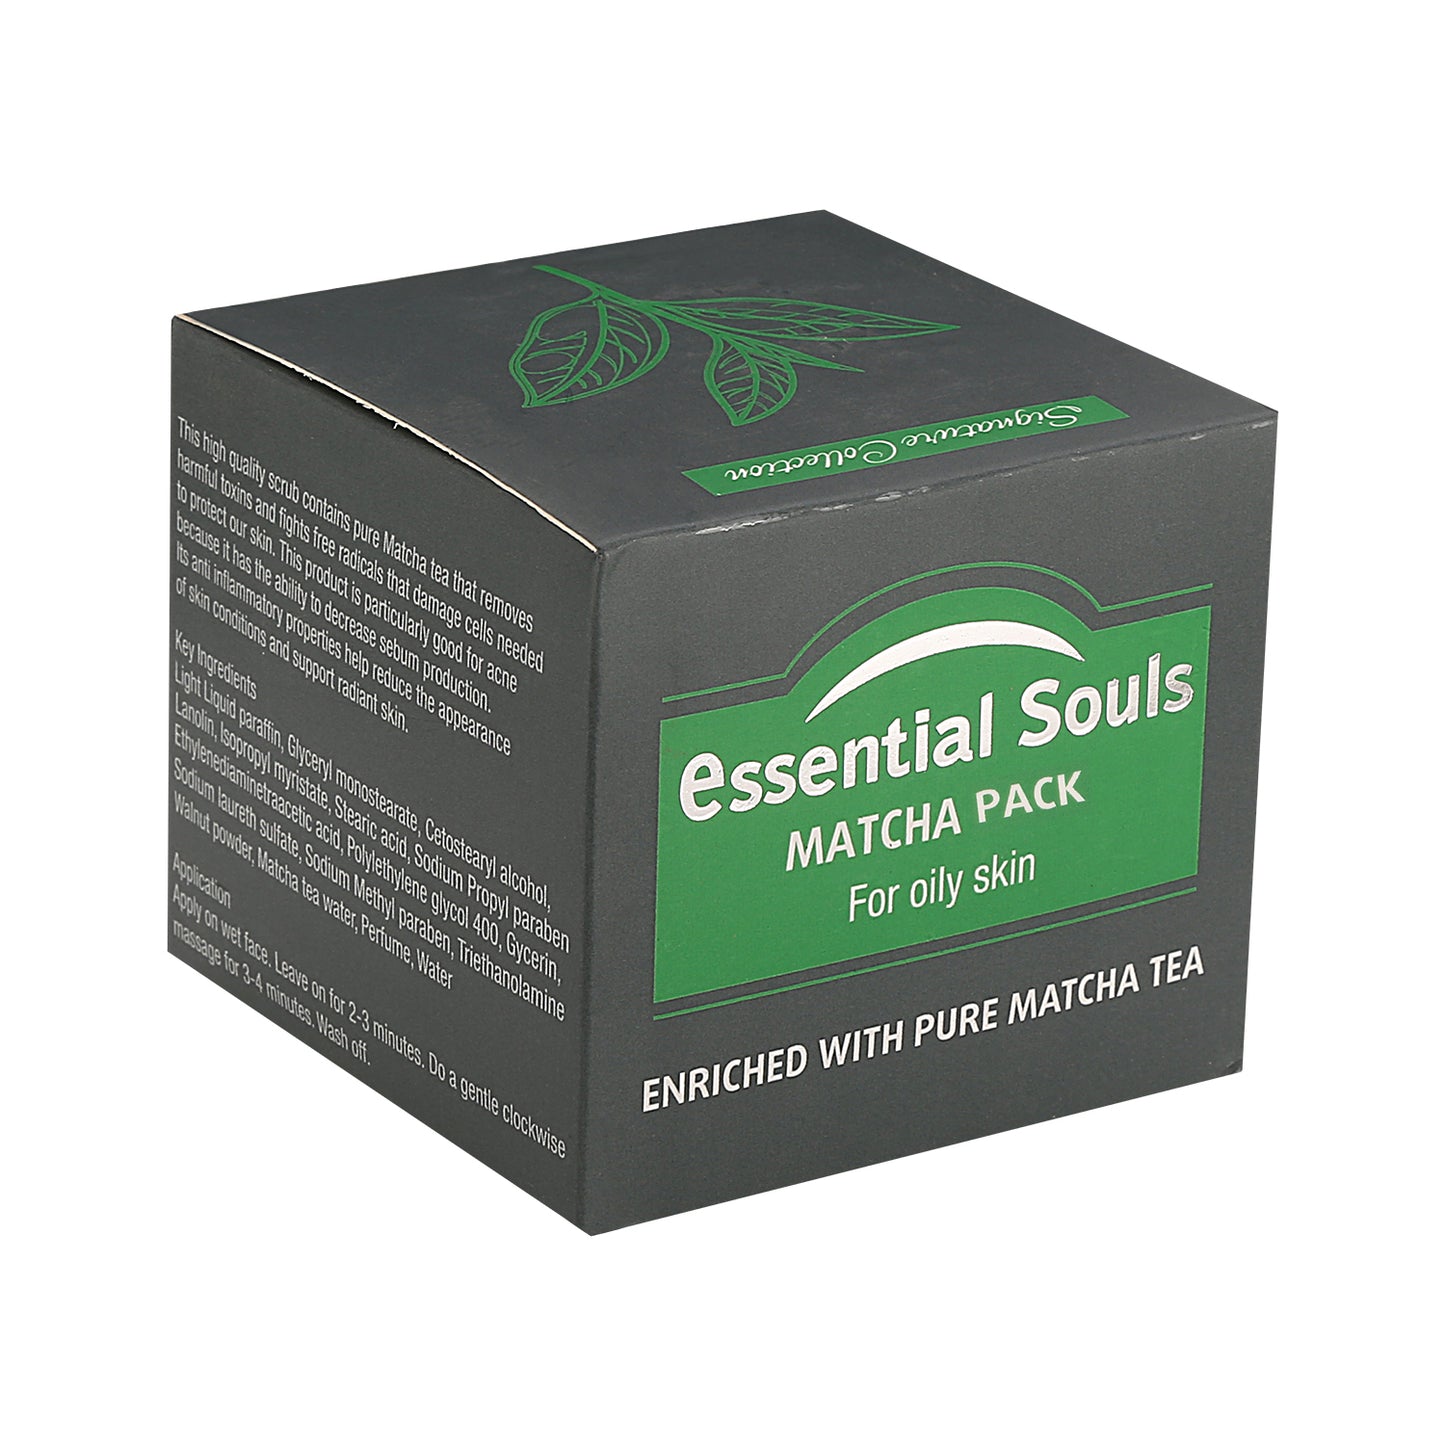 Essential Souls Matcha Pack - 50g